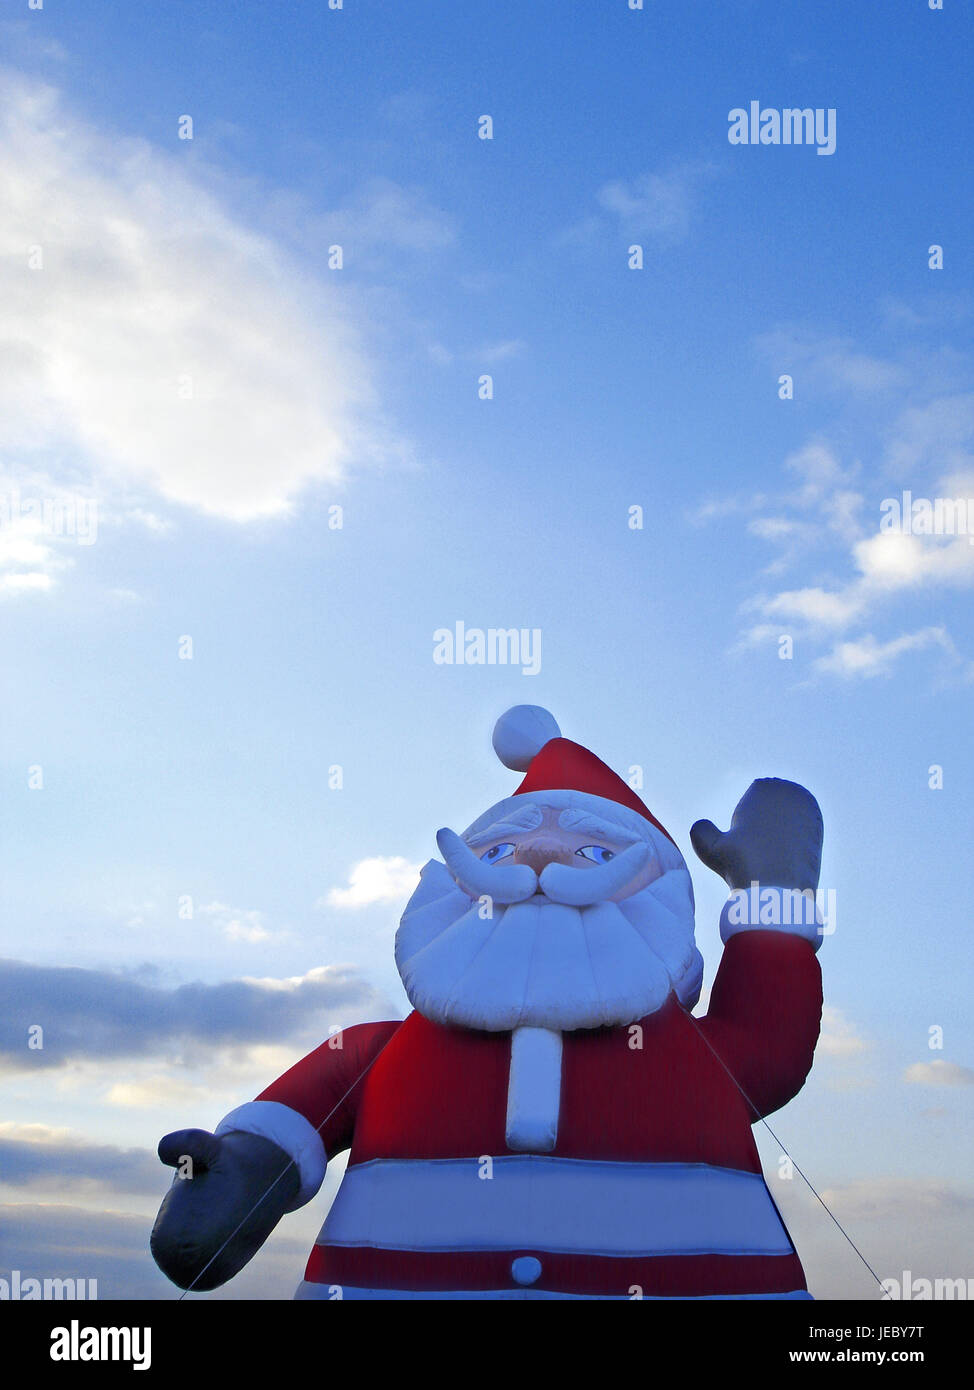 Nicholas, Santa Claus, Stock Photo